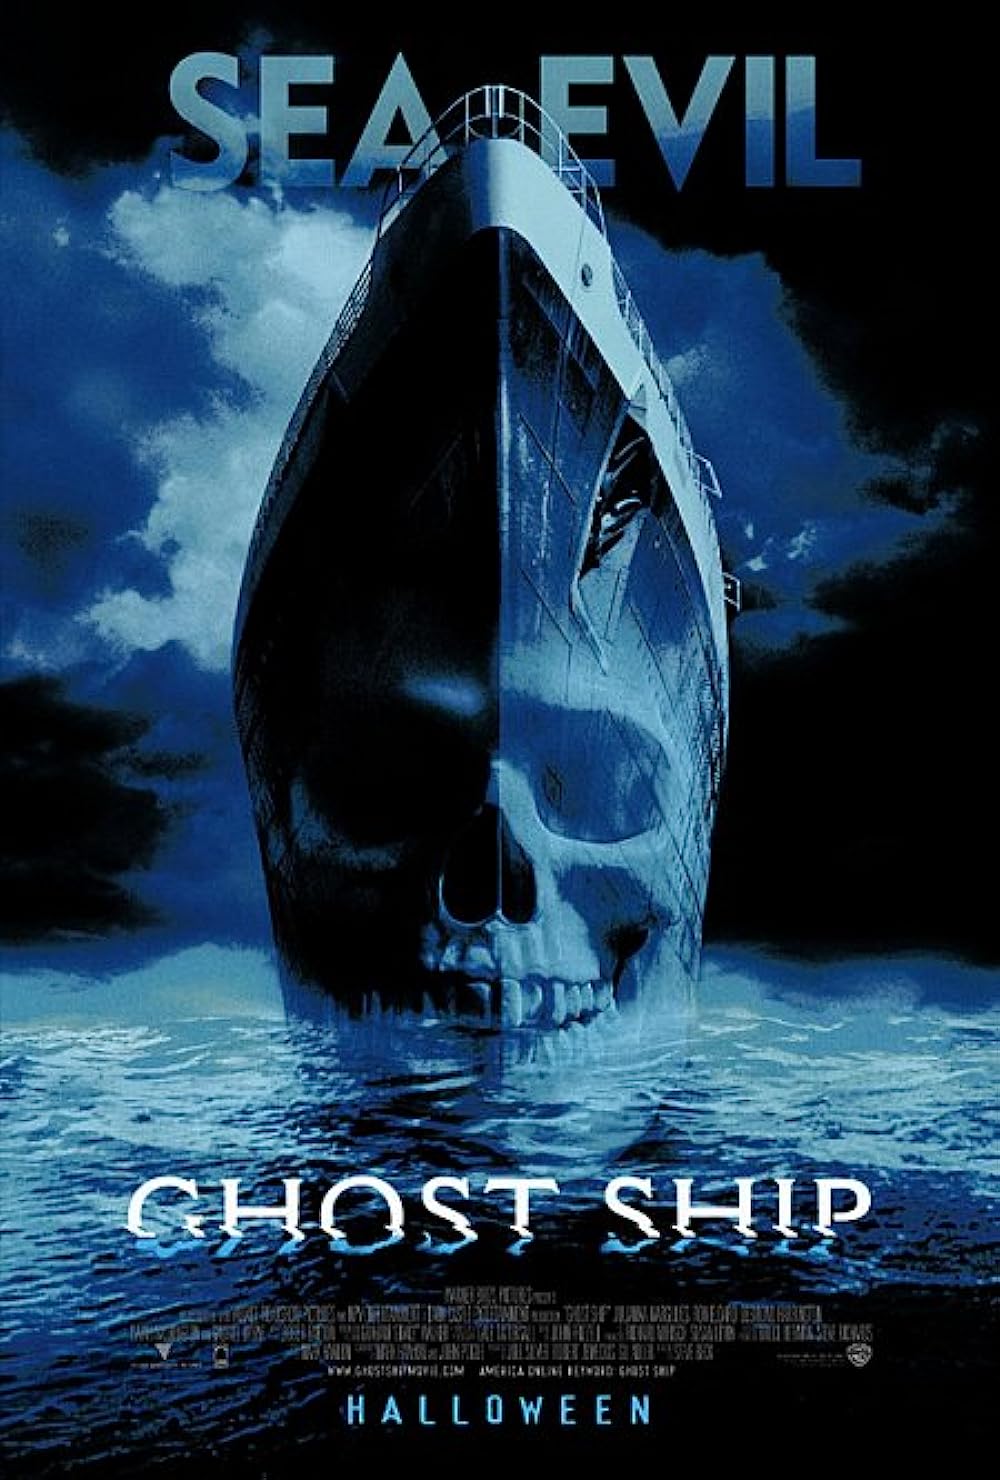 FULL MOVIE: Ghost Ship (2002) [Horror]